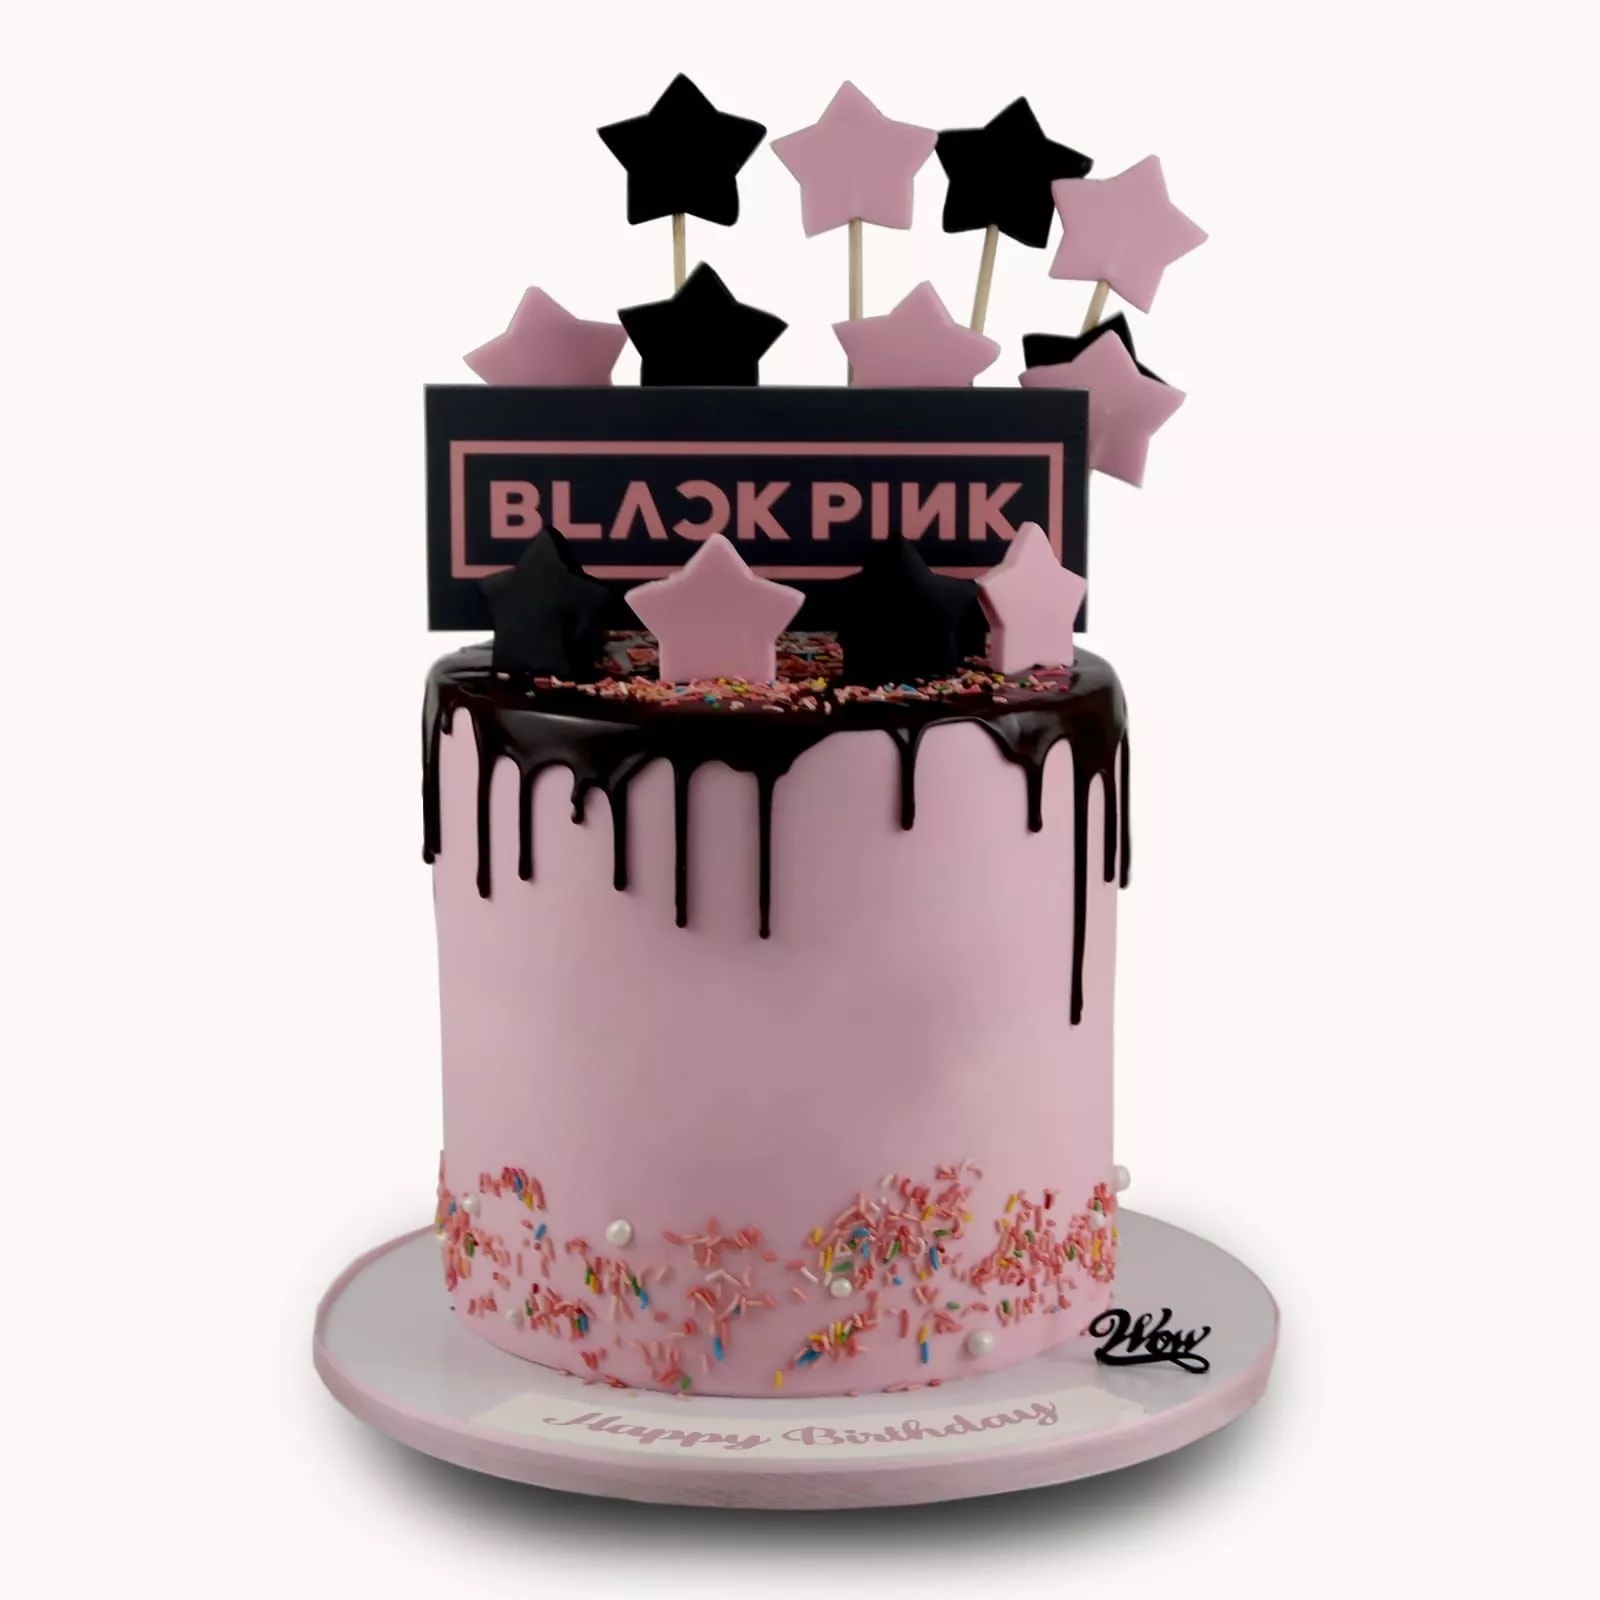 Blackpink Cake - 1139 – Cakes and Memories Bakeshop-sgquangbinhtourist.com.vn